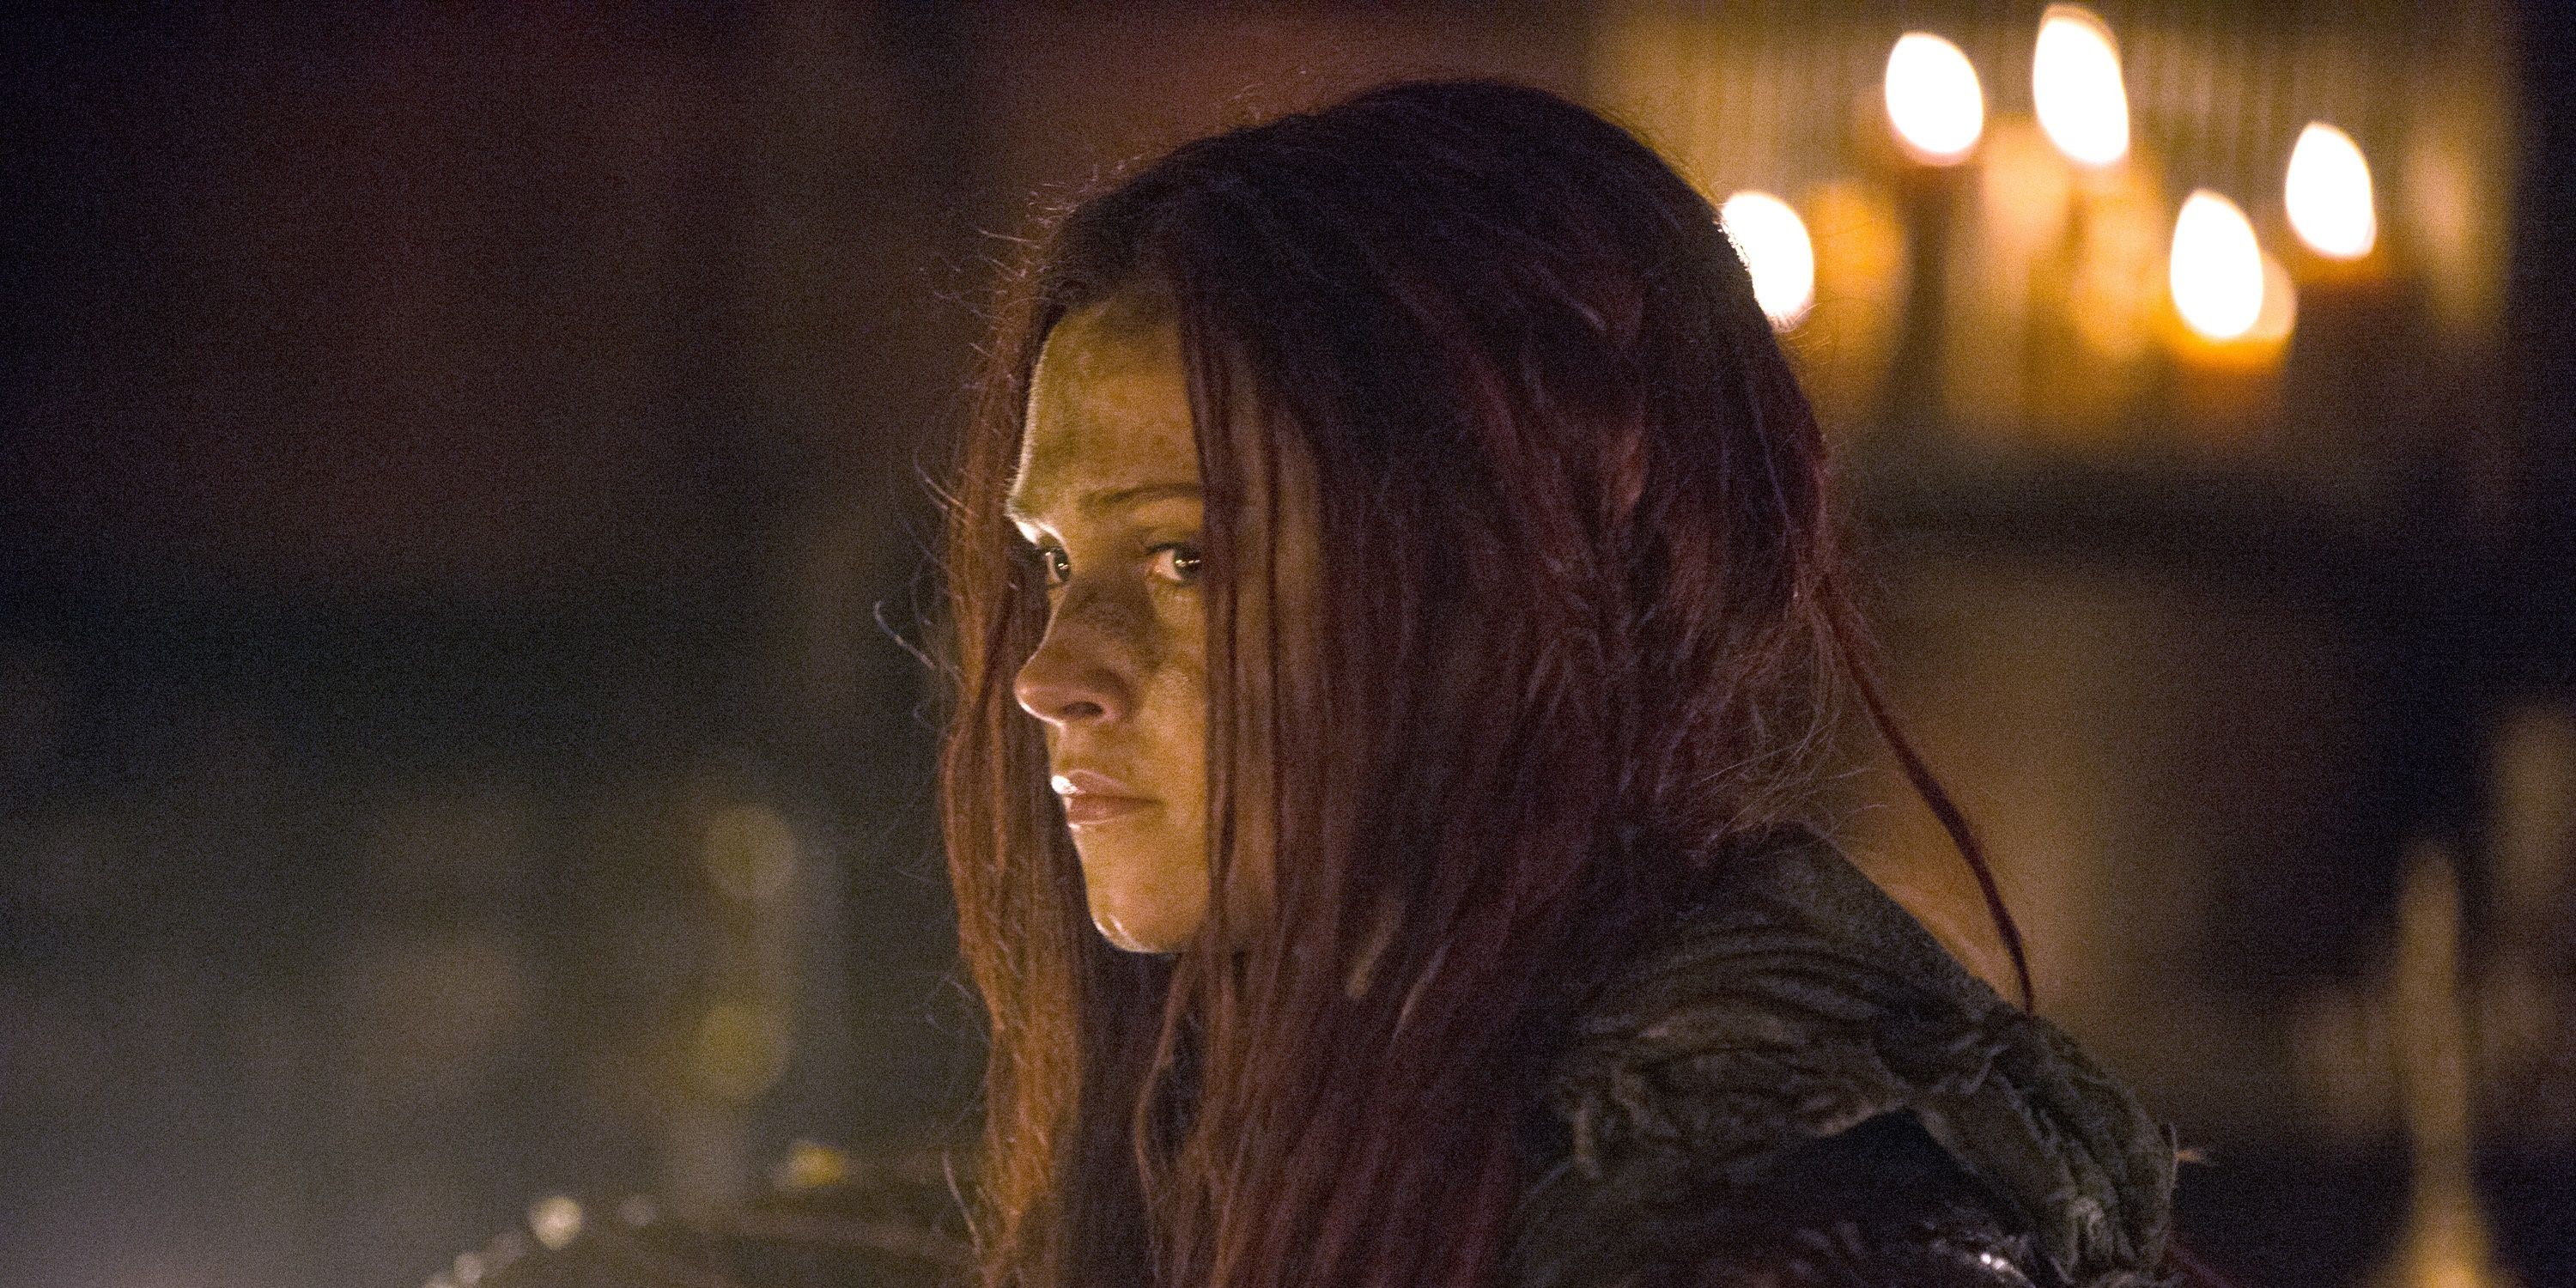 Clarke as Wanheda in The 100 Season 3